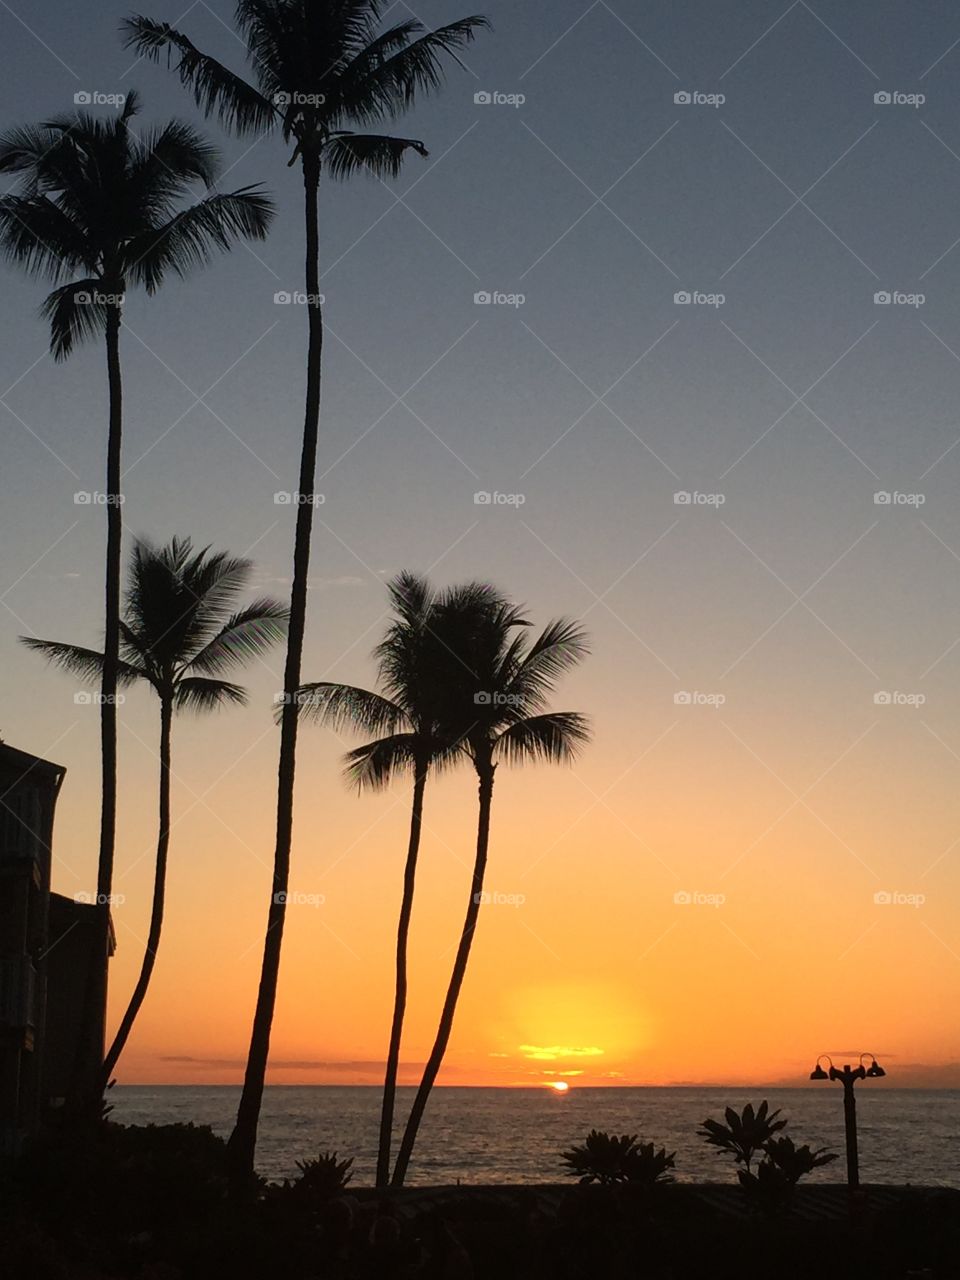 Sunset in Kona Hawaii